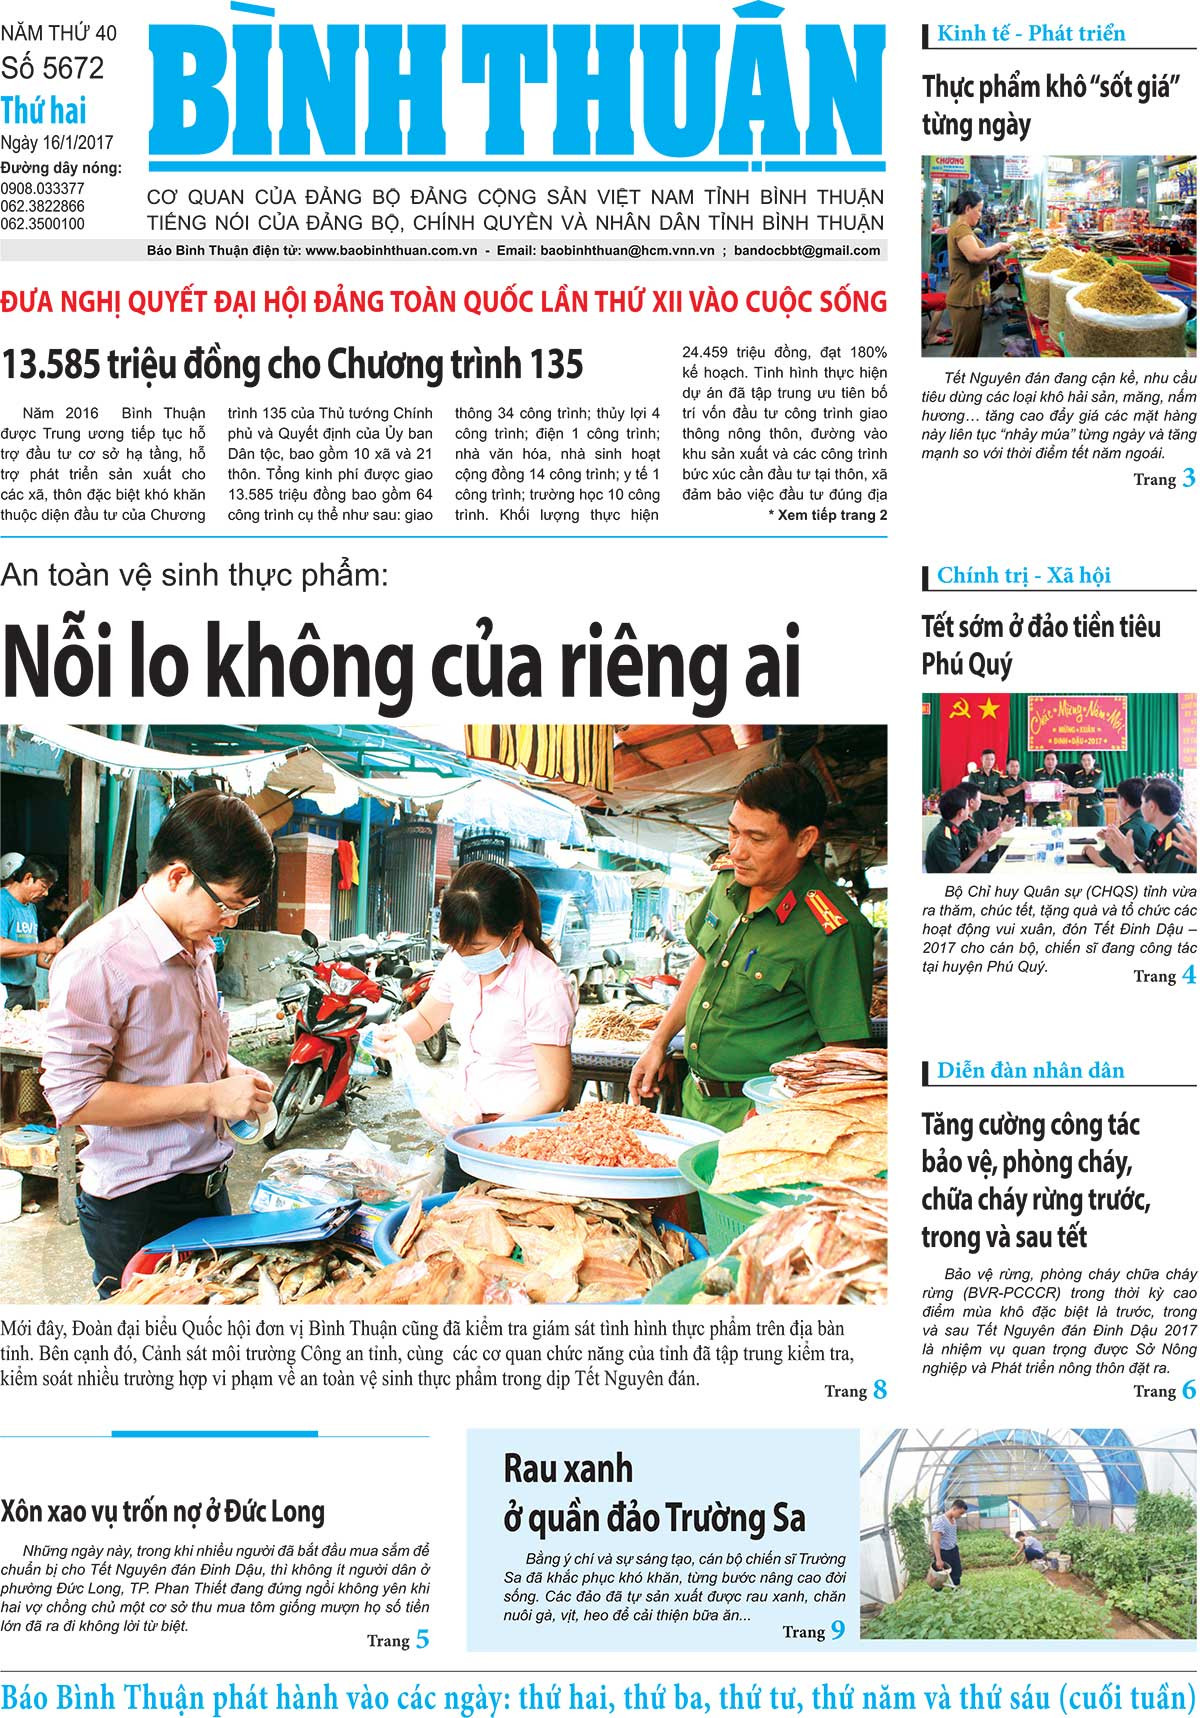 Báo in Bình Thuận: Trang Báo in Bình Thuận đưa tin về các sự kiện, cập nhật những thông tin mới nhất về kinh tế, chính trị và văn hóa của khu vực này. Với những bài báo chất lượng và chuyên nghiệp, Báo in Bình Thuận là nguồn tin đáng tin cậy cho những ai quan tâm đến vùng đất Bình Thuận.